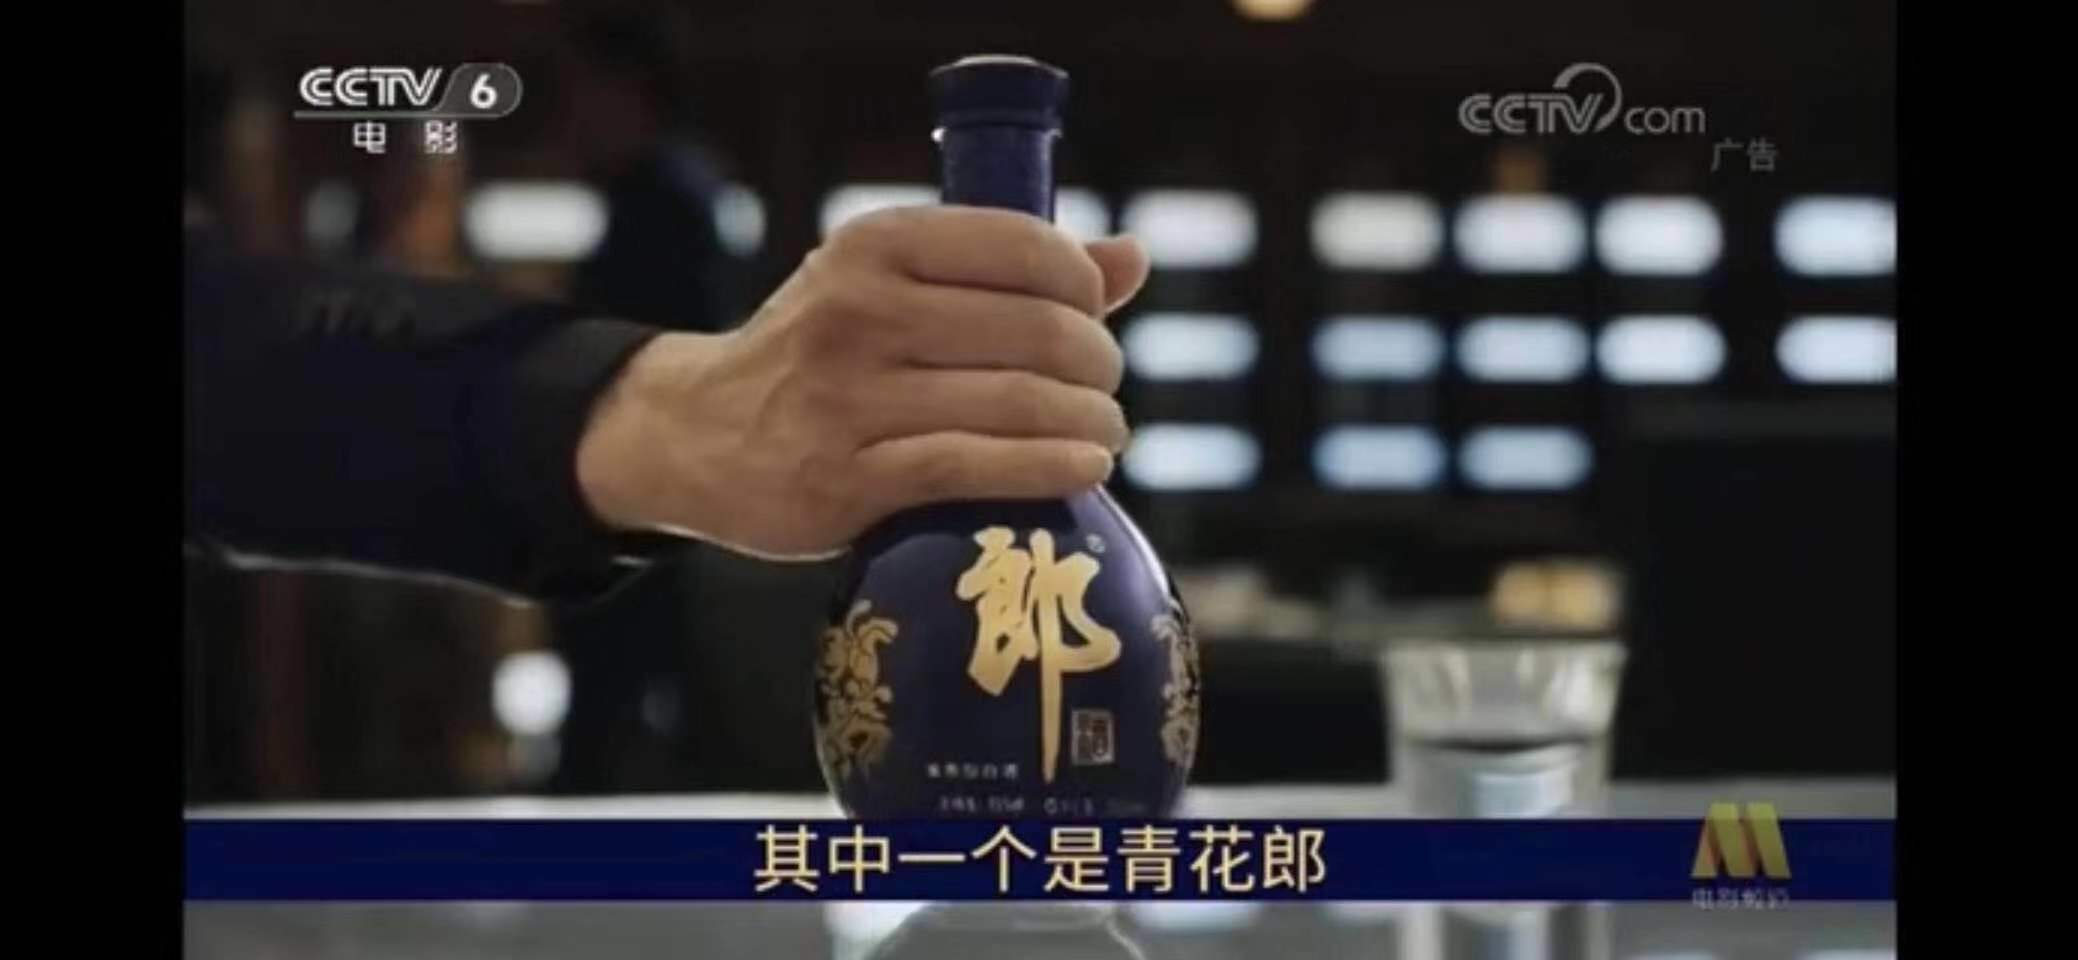 青花郎、西凤酒打响新年“第一枪”：2020白酒品牌发力电影频道